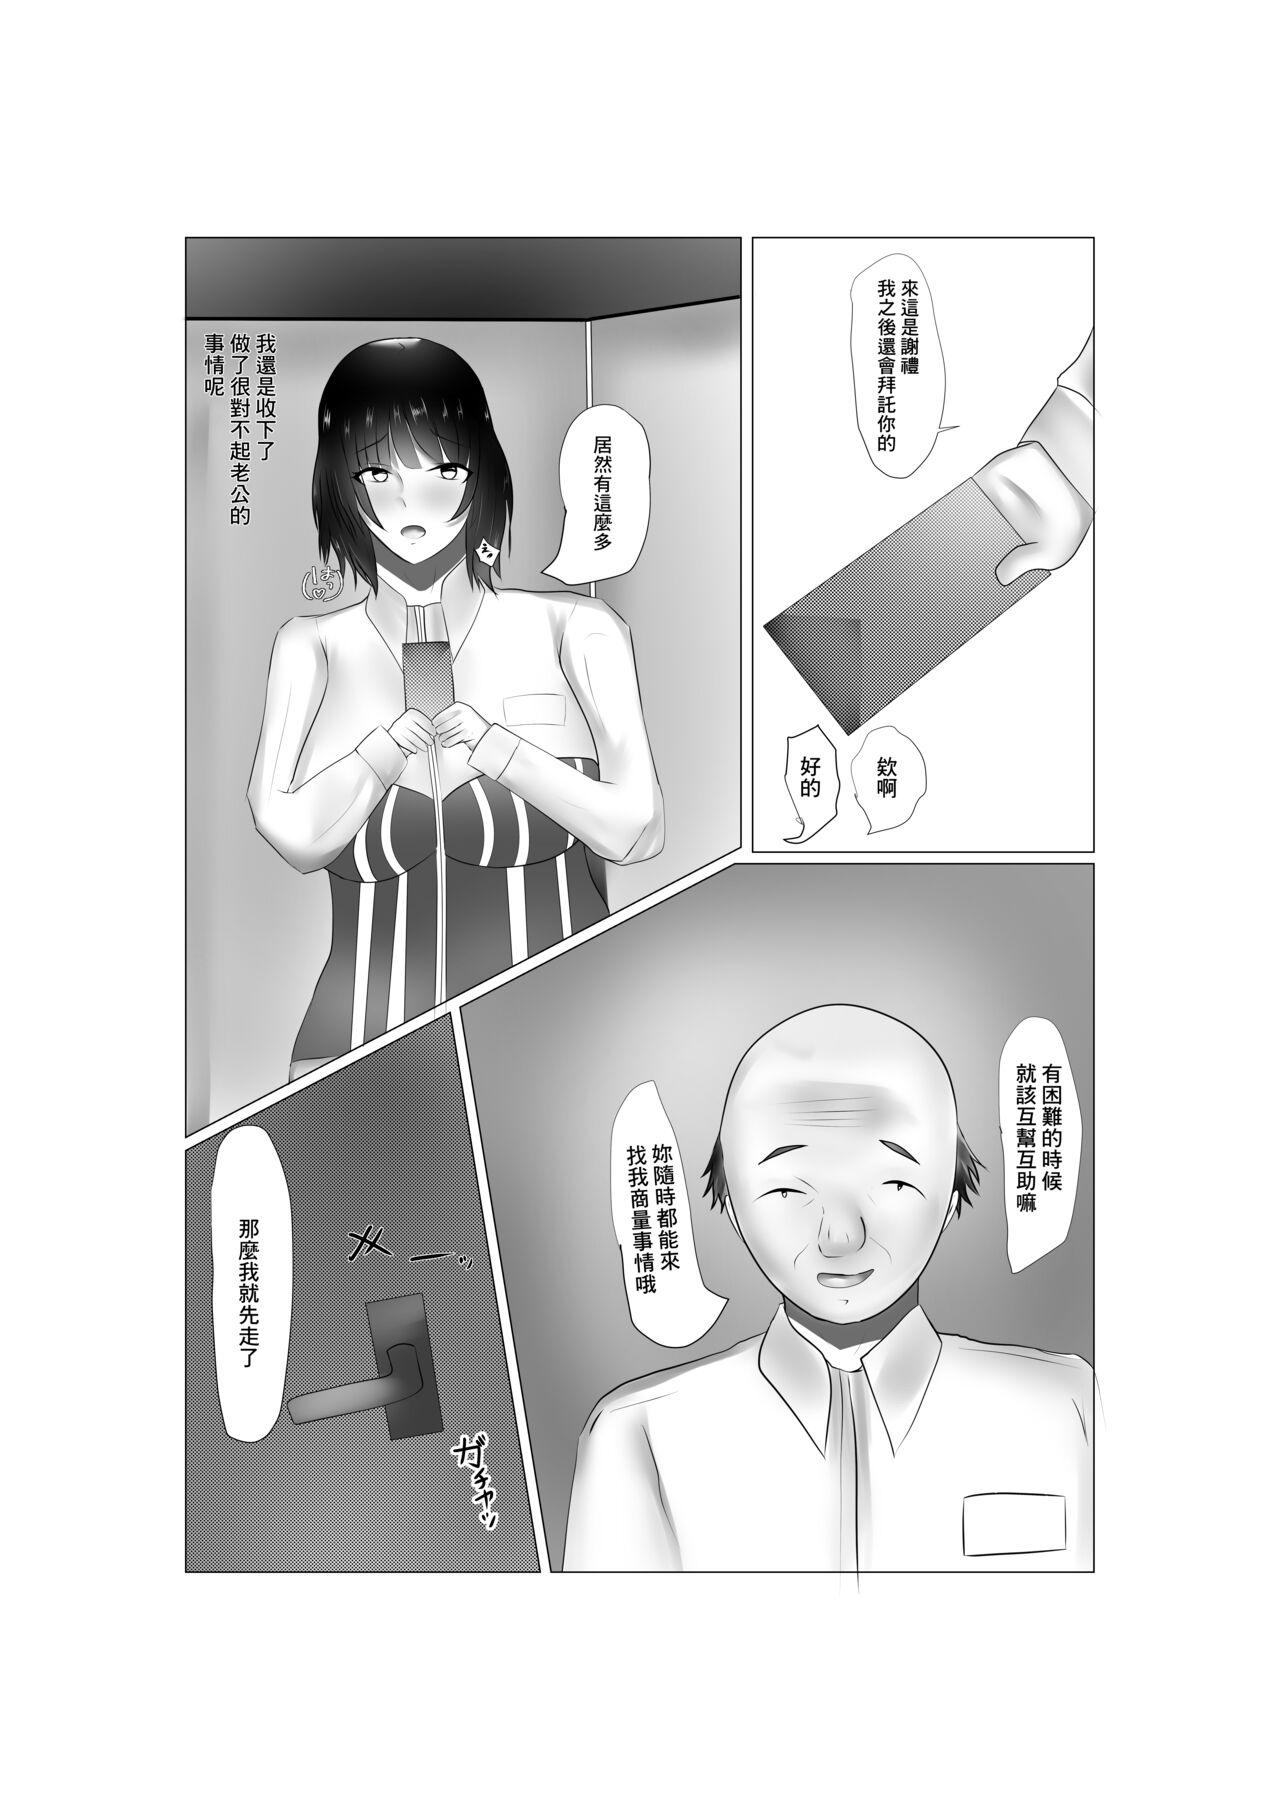 Putinha コンビニ奥様の裏の顔 - Original Softcore - Page 12